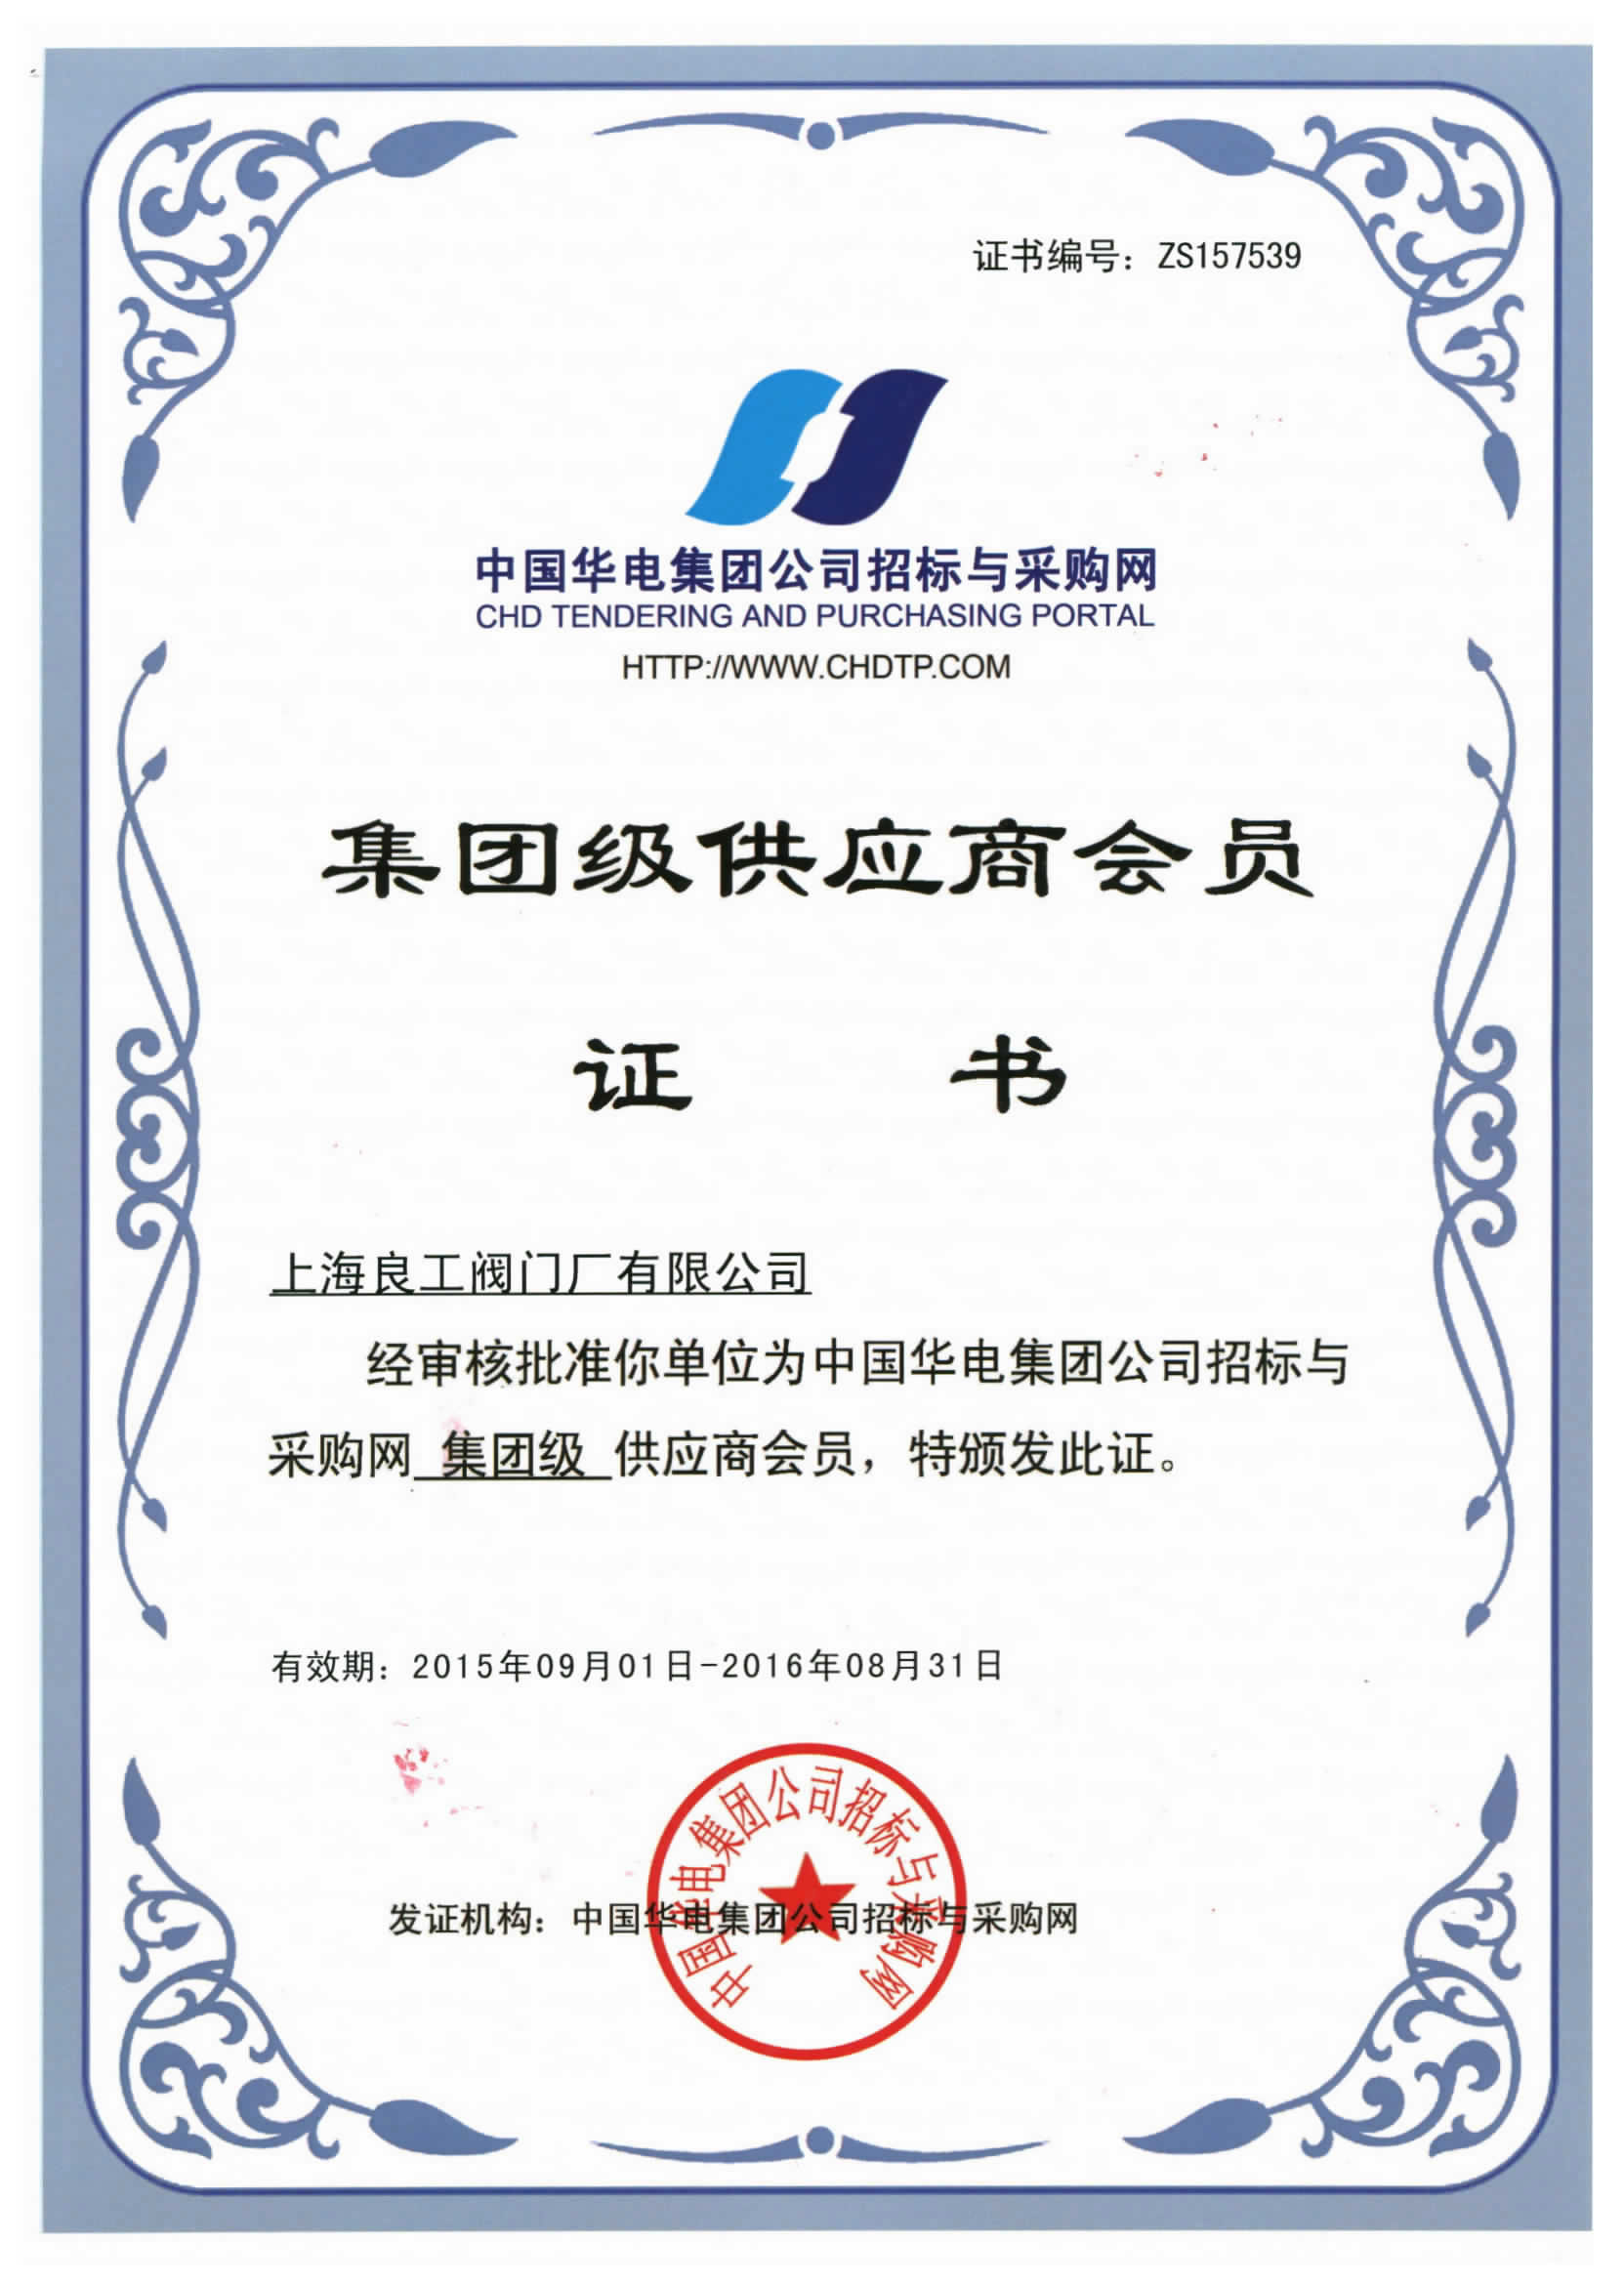 中國華電集團公司招標與採購集團級供應商會員